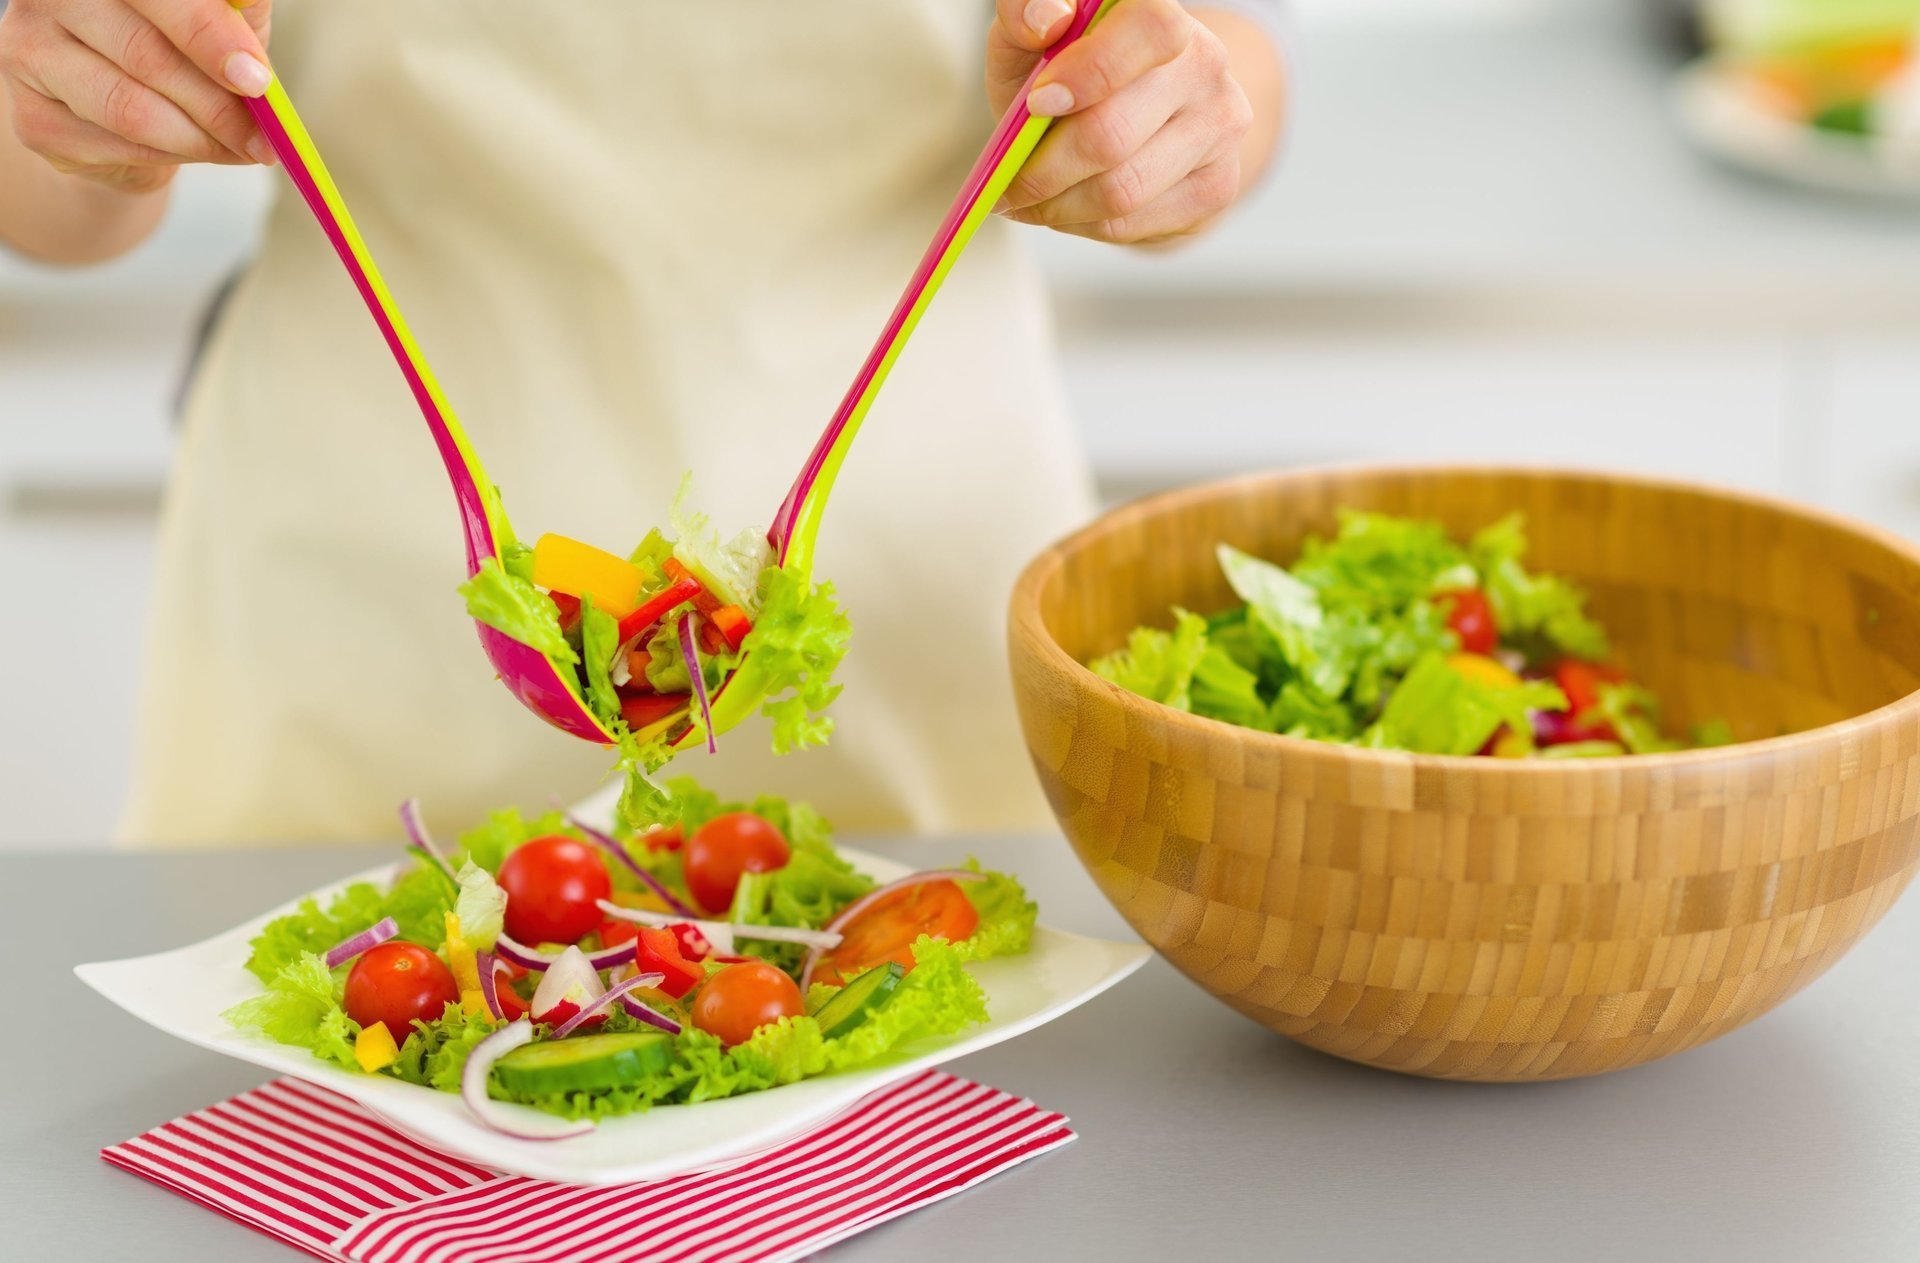 Руки накладывают зелёный салат в тарелку